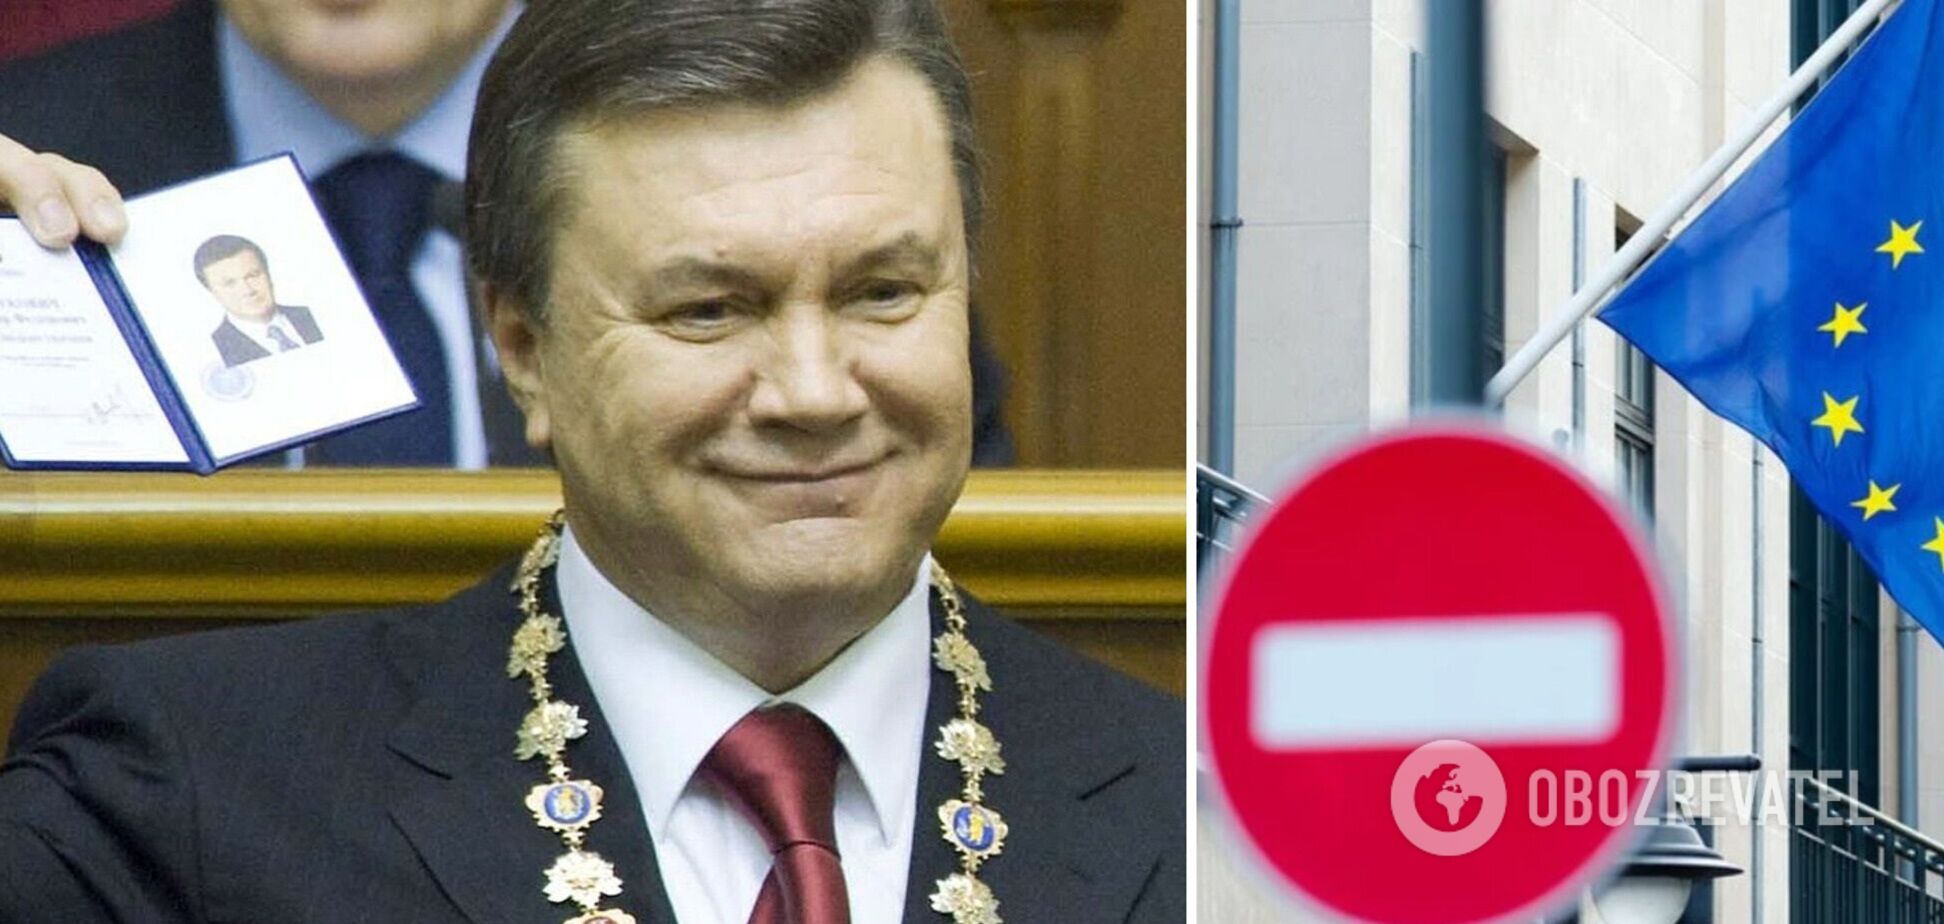 ЄС продовжив санкції проти Януковича лише на 6 місяців замість очікуваного 1 року